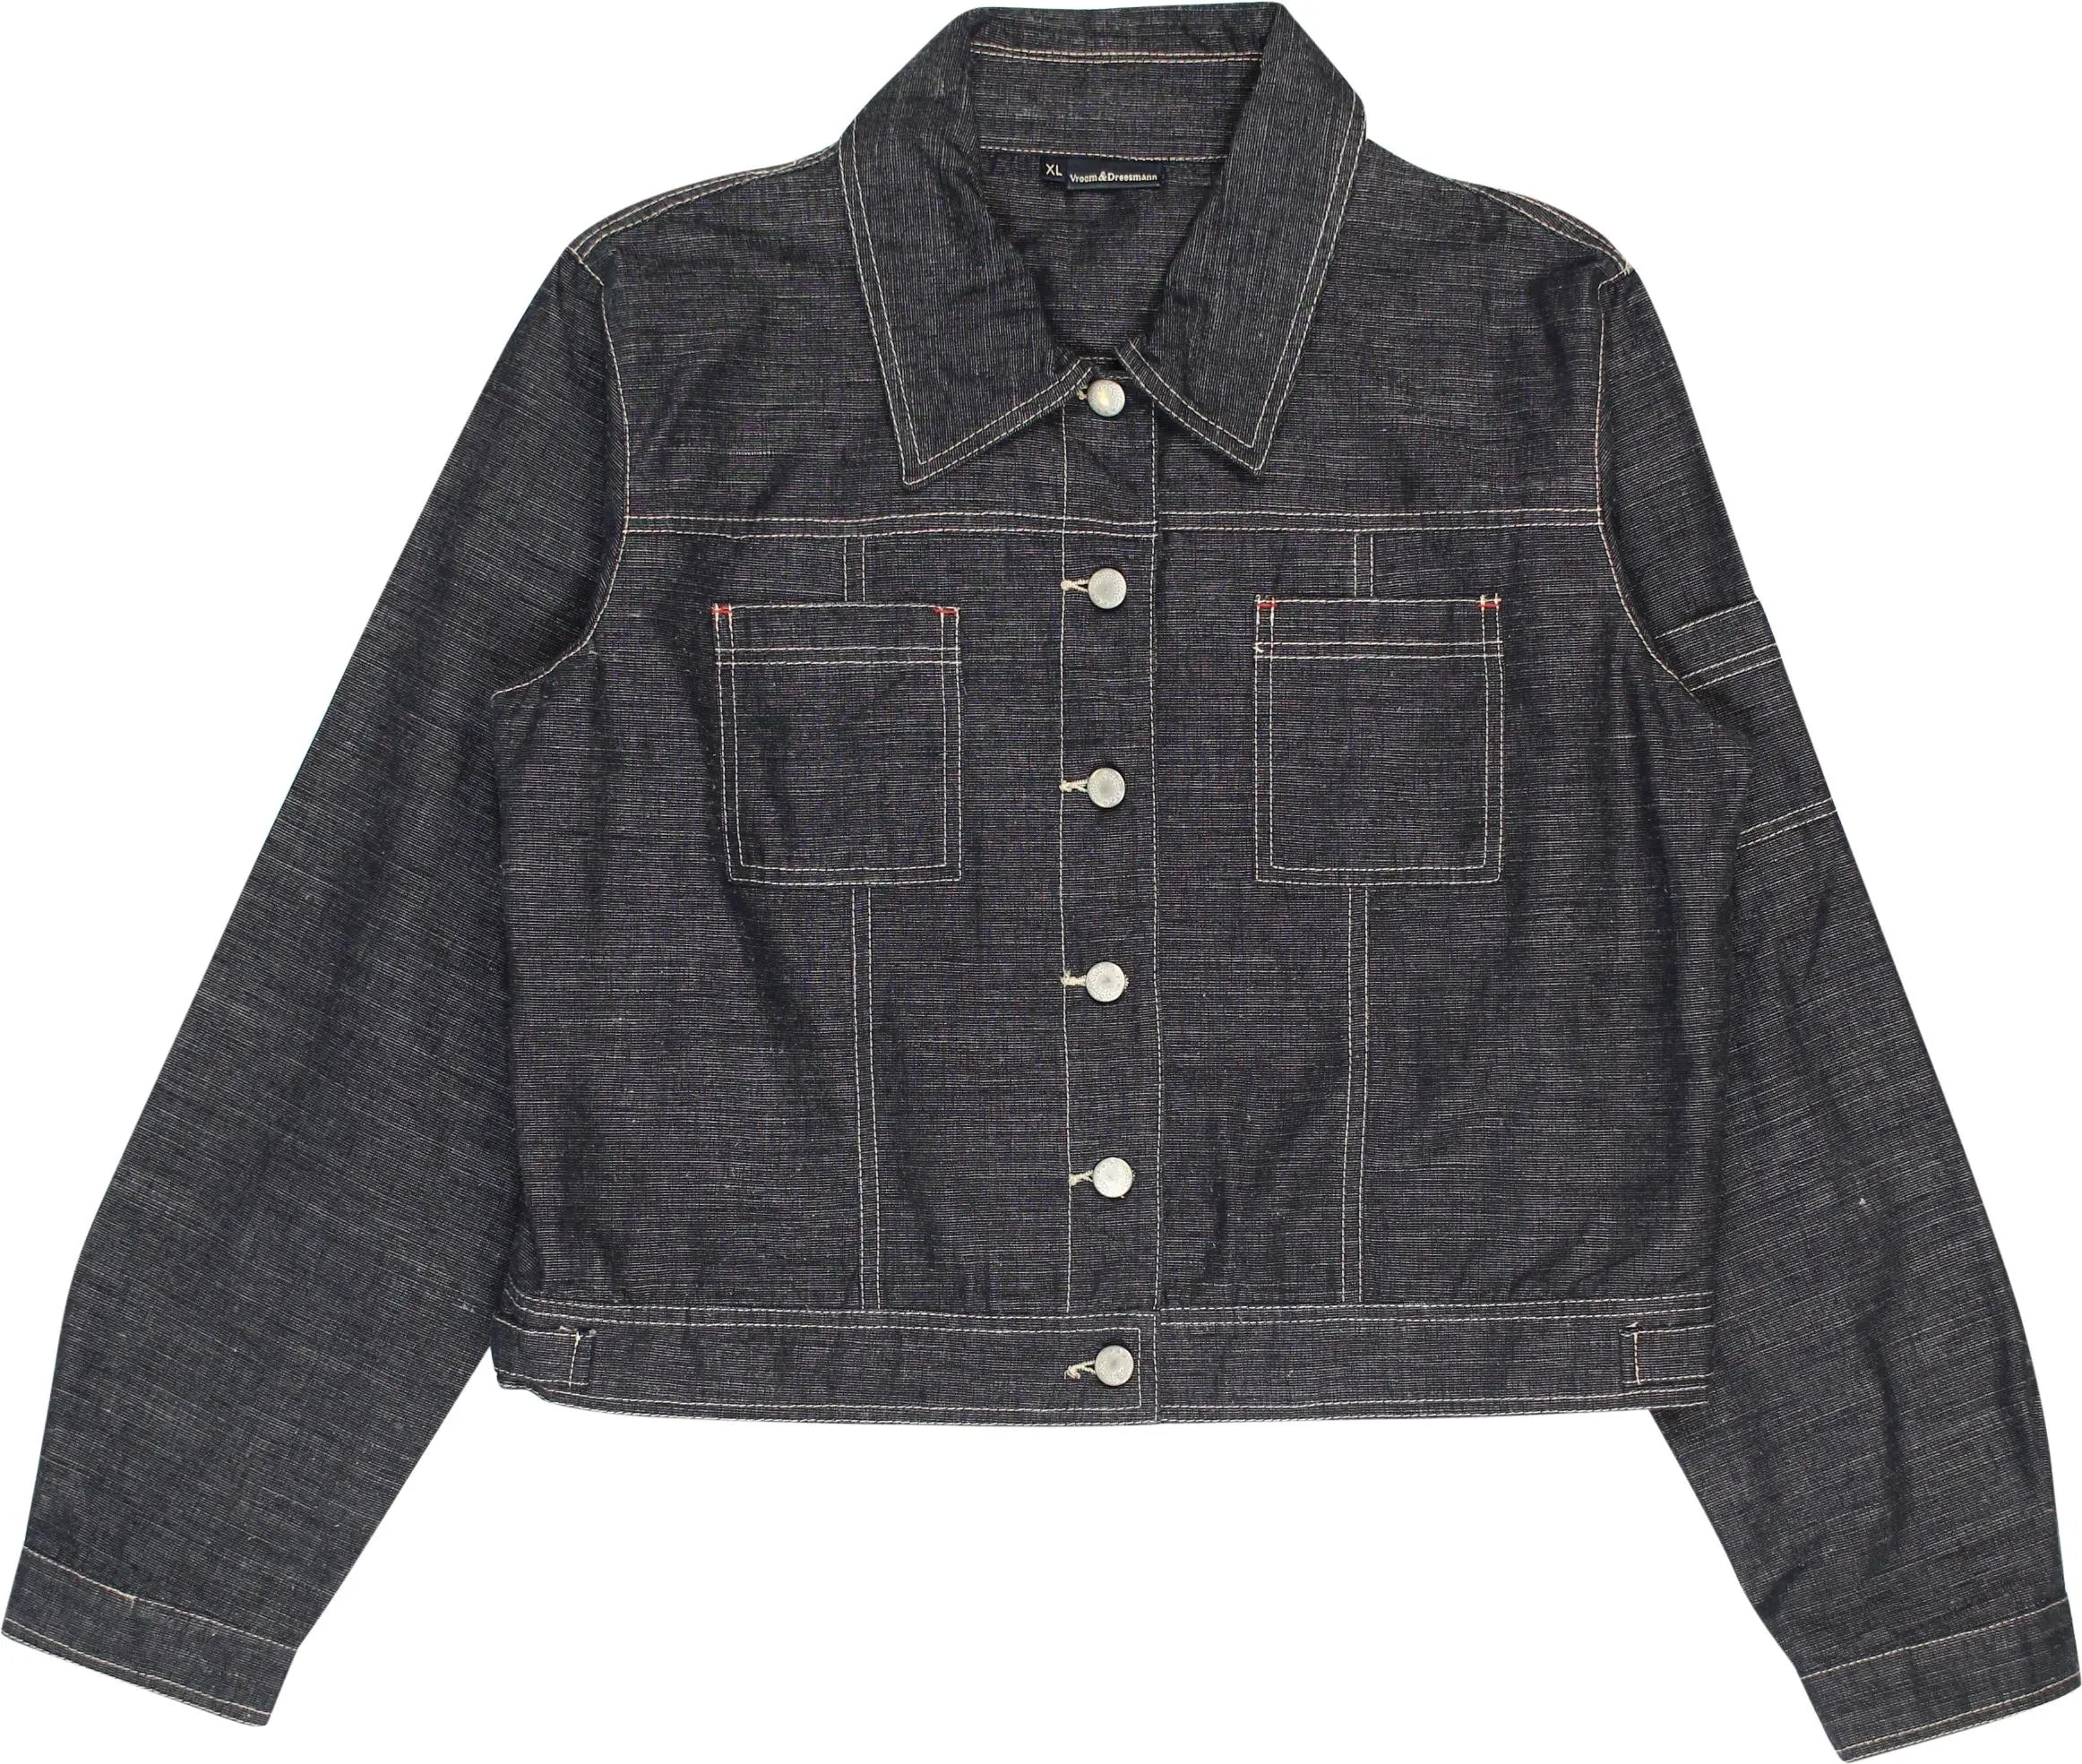 V&D - Cropped Denim Jacket- ThriftTale.com - Vintage and second handclothing